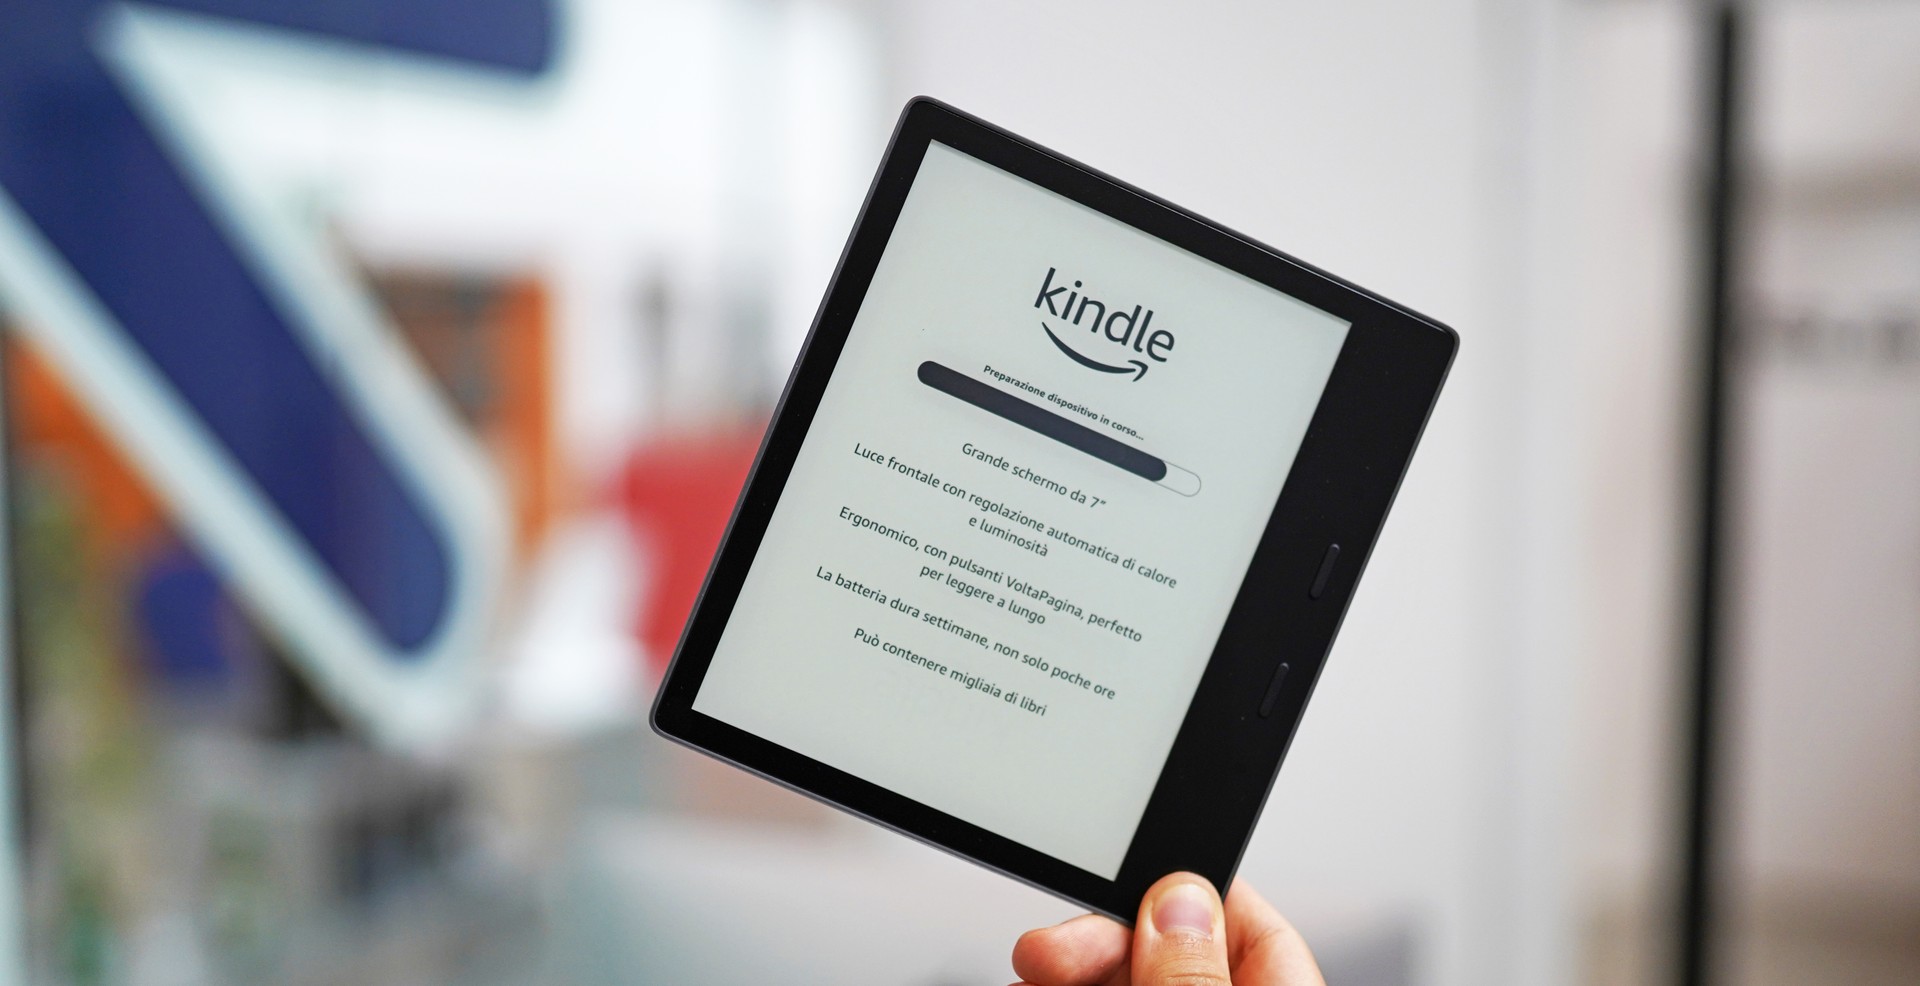 Black Friday in anticipo: e-book reader Kindle in offerta al miglior  prezzo 